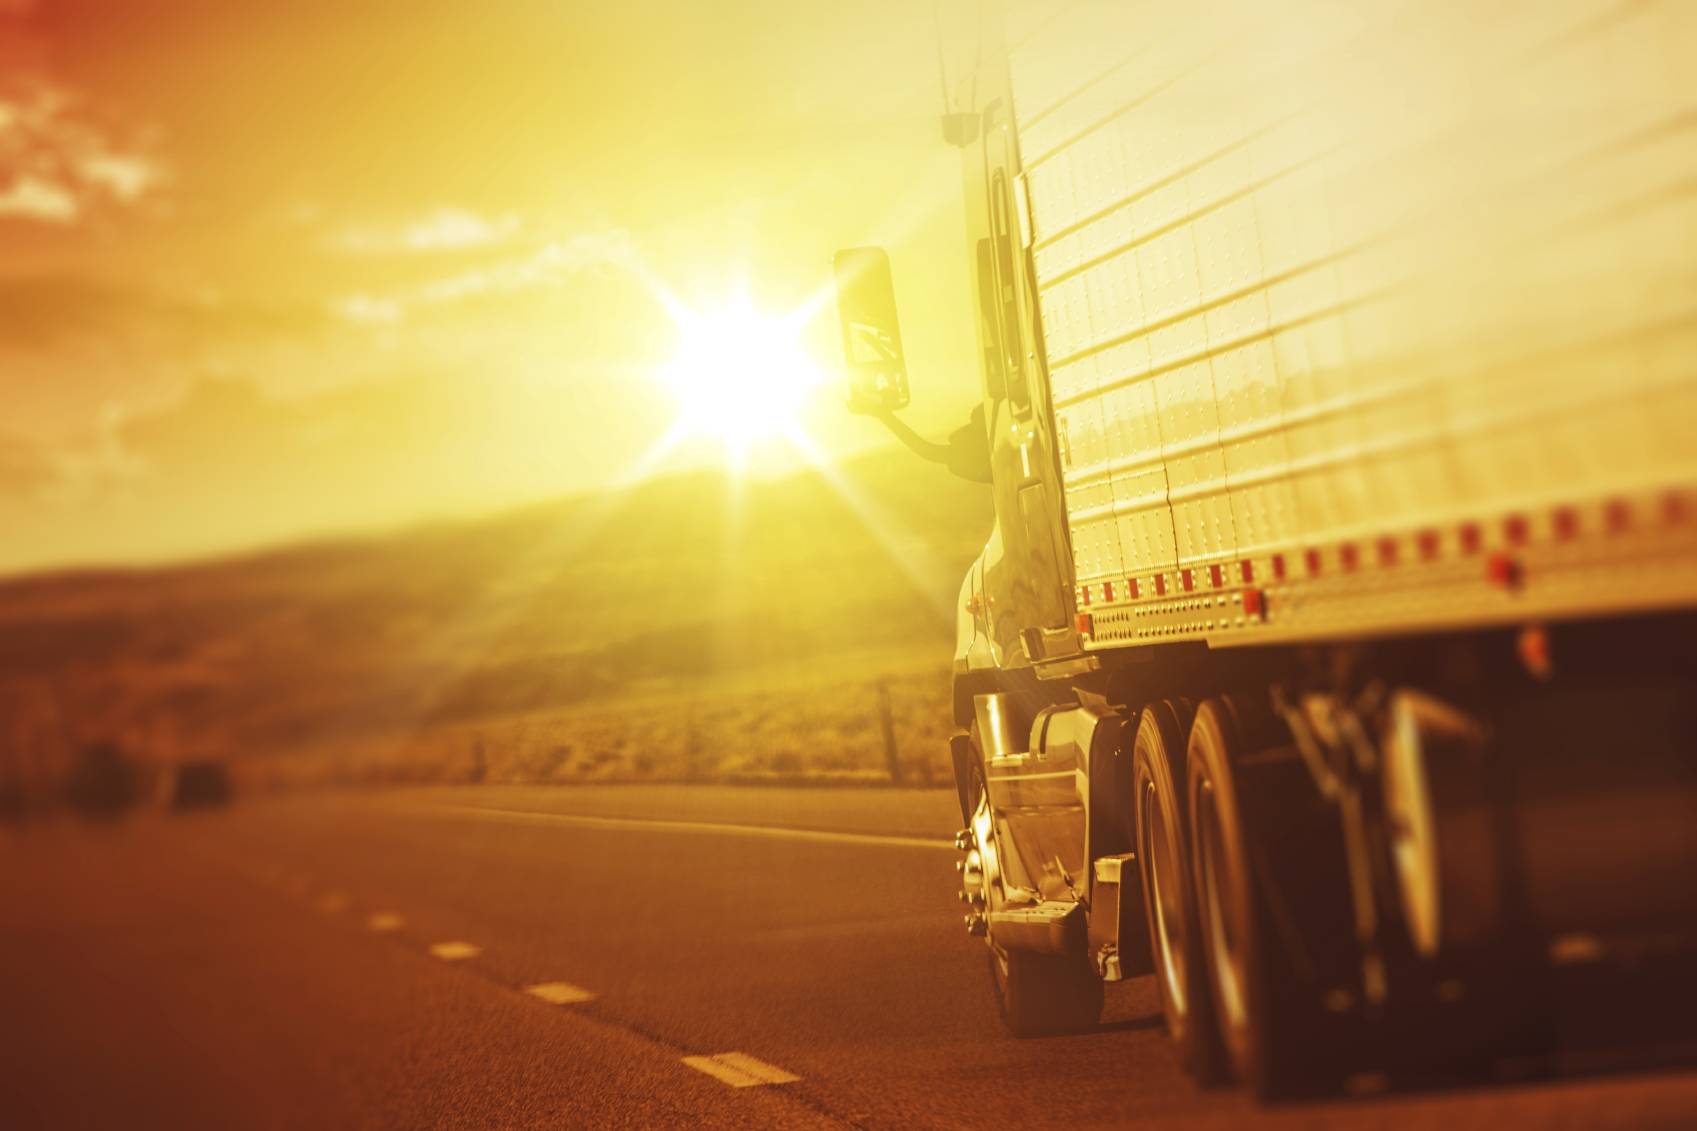 18 wheeler truck driving toward sun